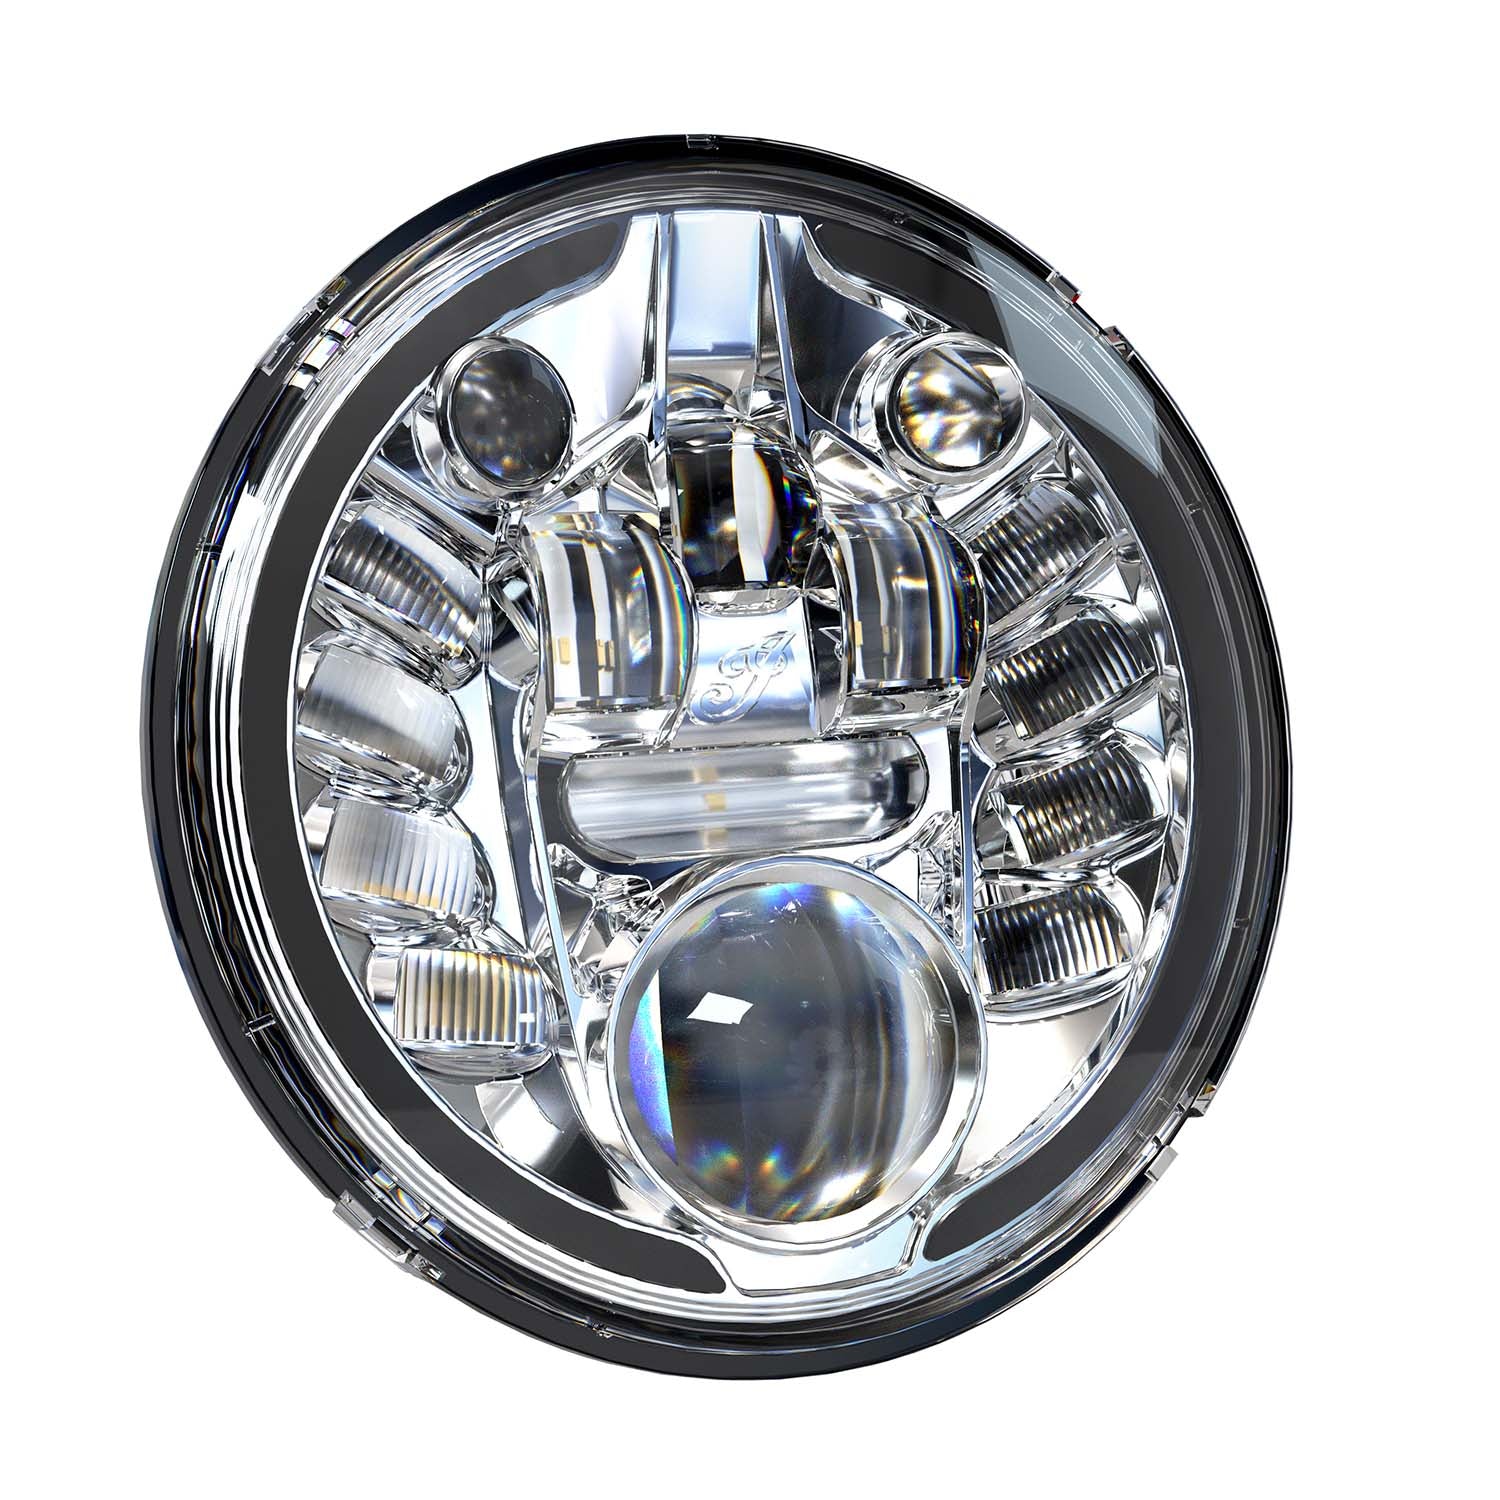 Pathfinder Adaptive LED Headlight, Chrome